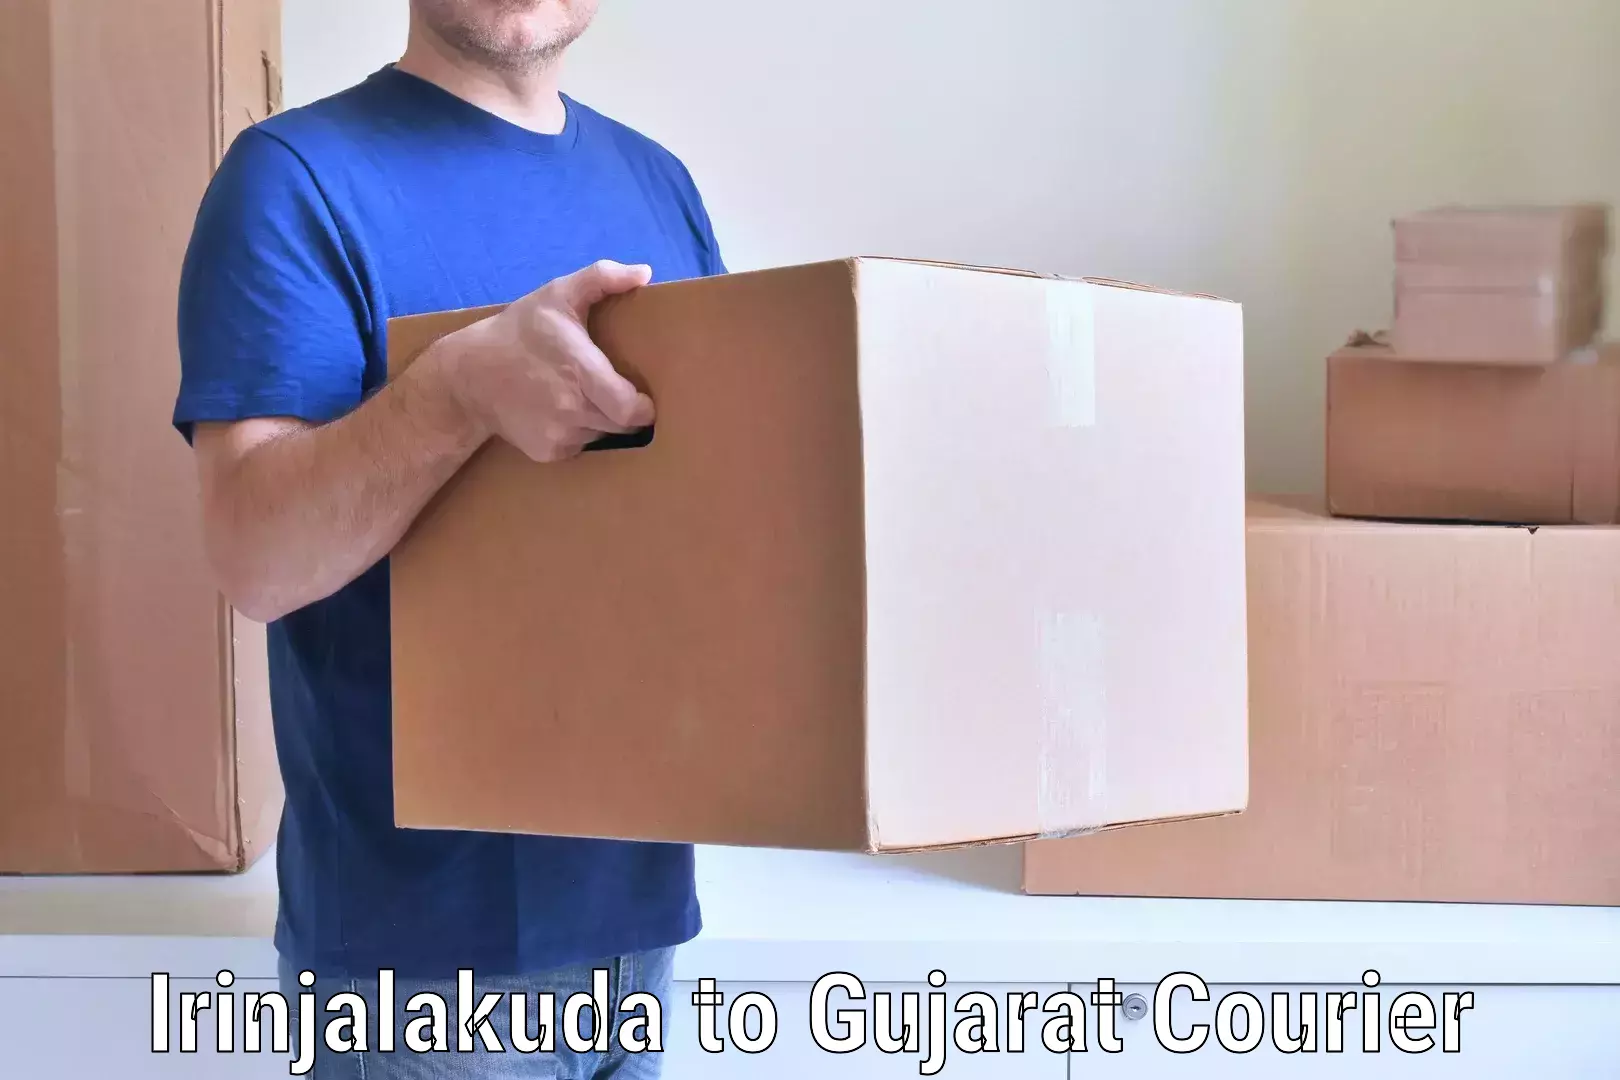 Furniture moving experts Irinjalakuda to Gujarat